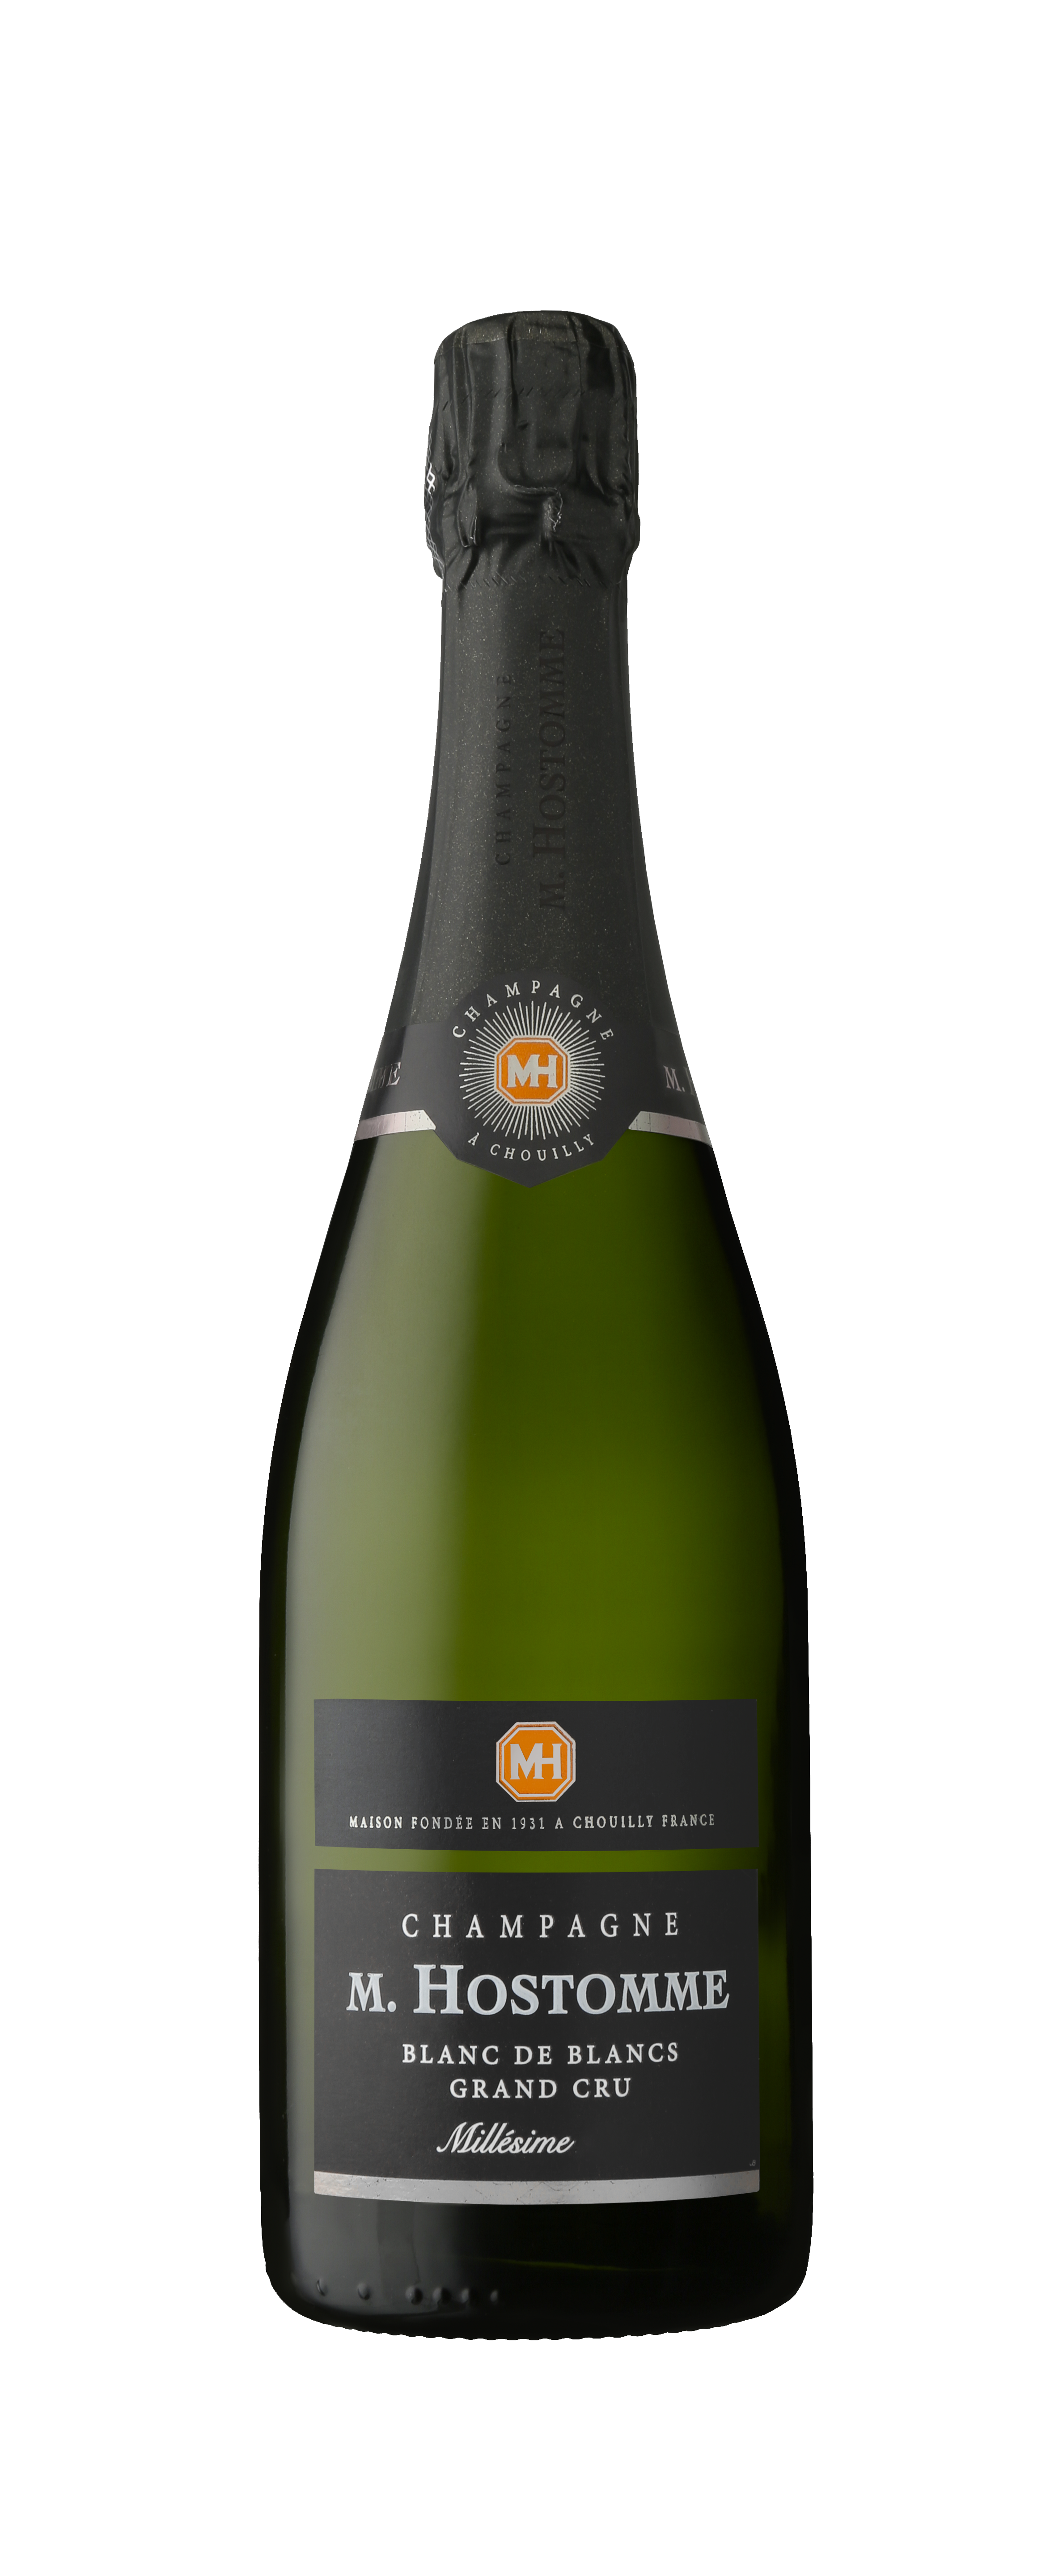 2010 Champagne Millesime bdb AOC Grand Cru 0.75l